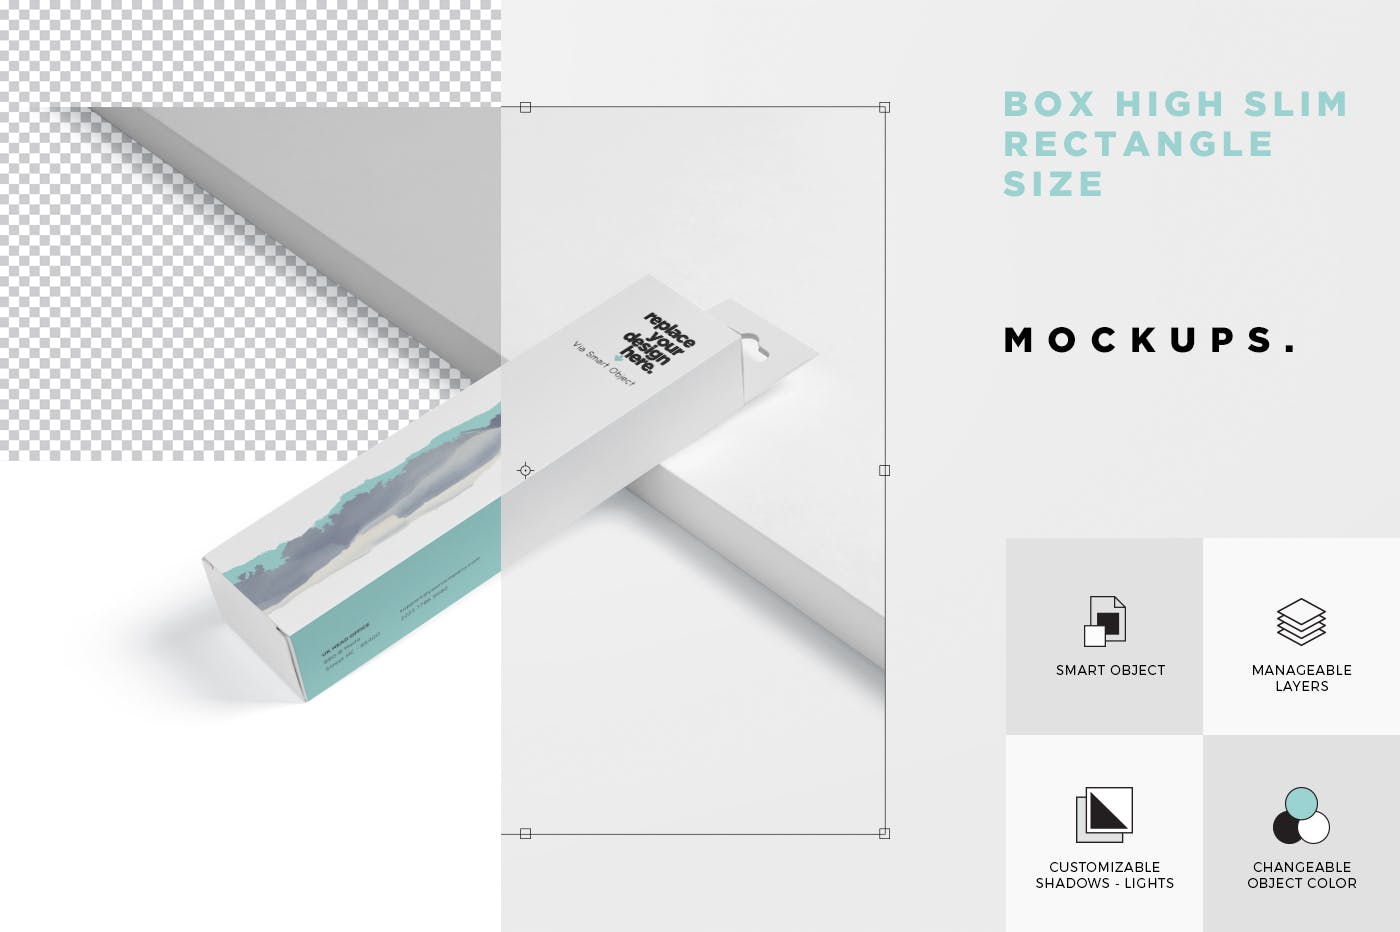 超薄矩形长条包装盒外观设计效果图非凡图库精选 Box Mockup PSDs – High Slim Rectangle Size Hanger插图(6)